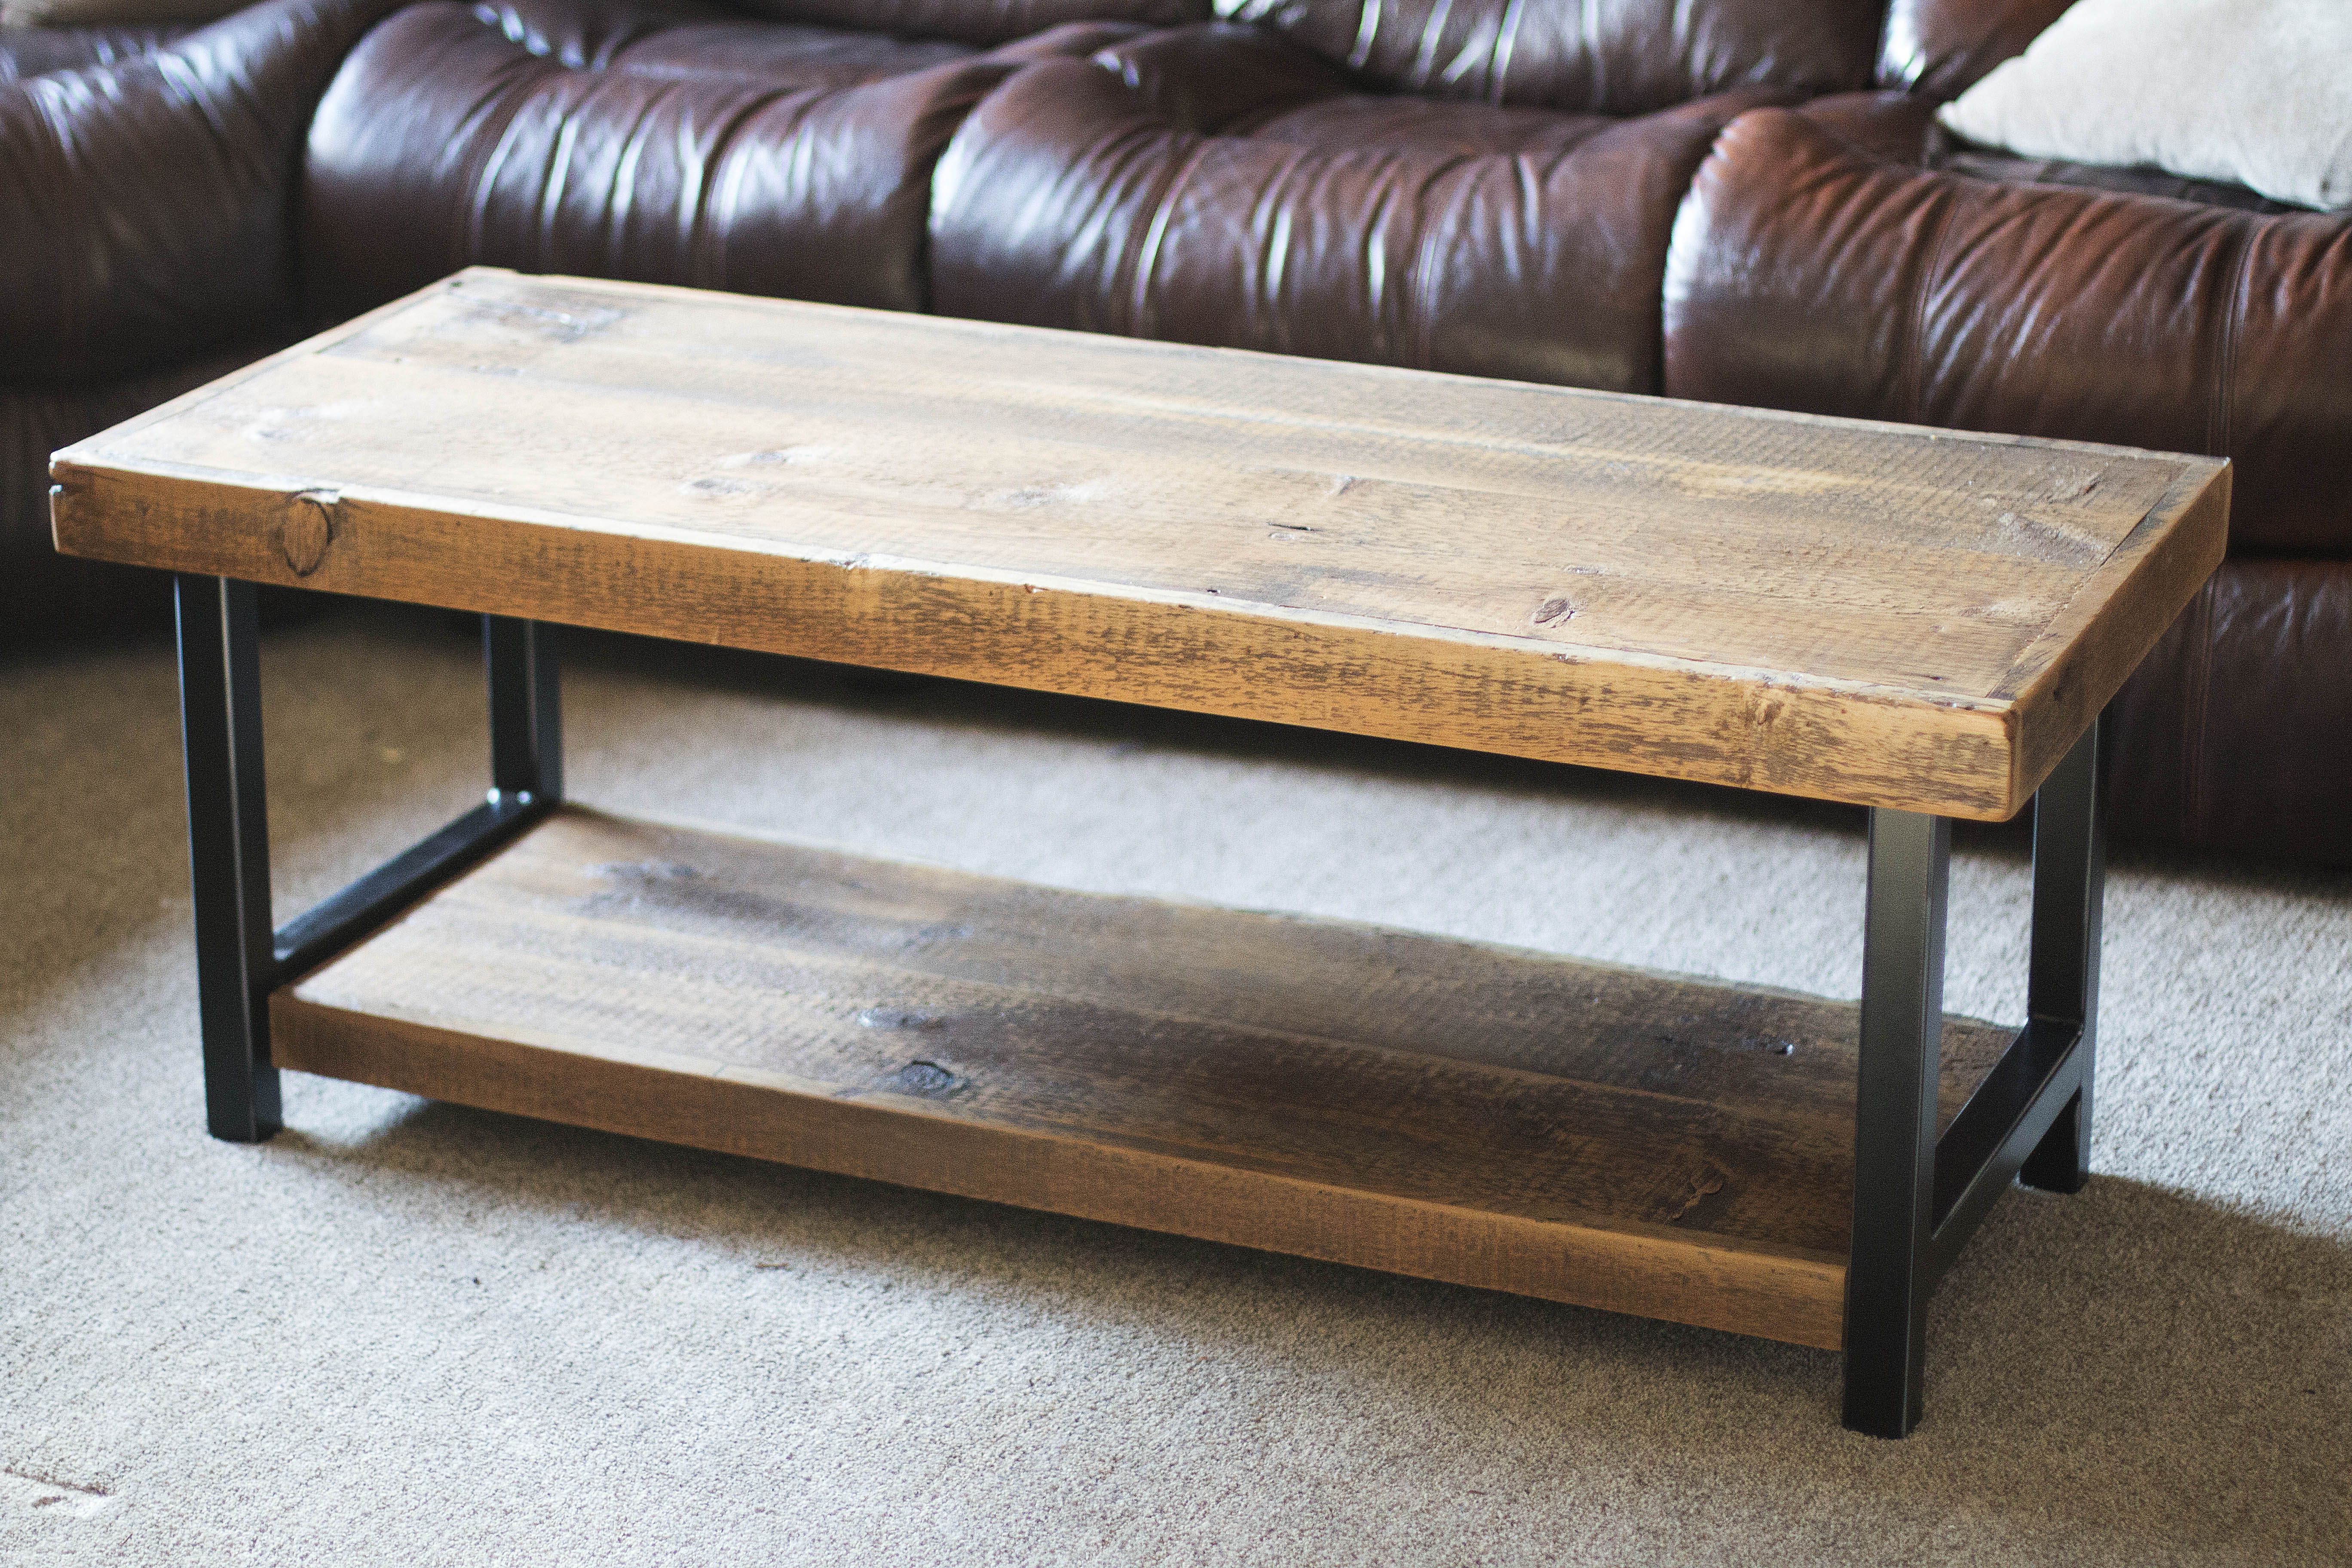 Rustic Wood Coffee Table Industrial Wood Coffee Table Reclaimed Wood Coffee Table